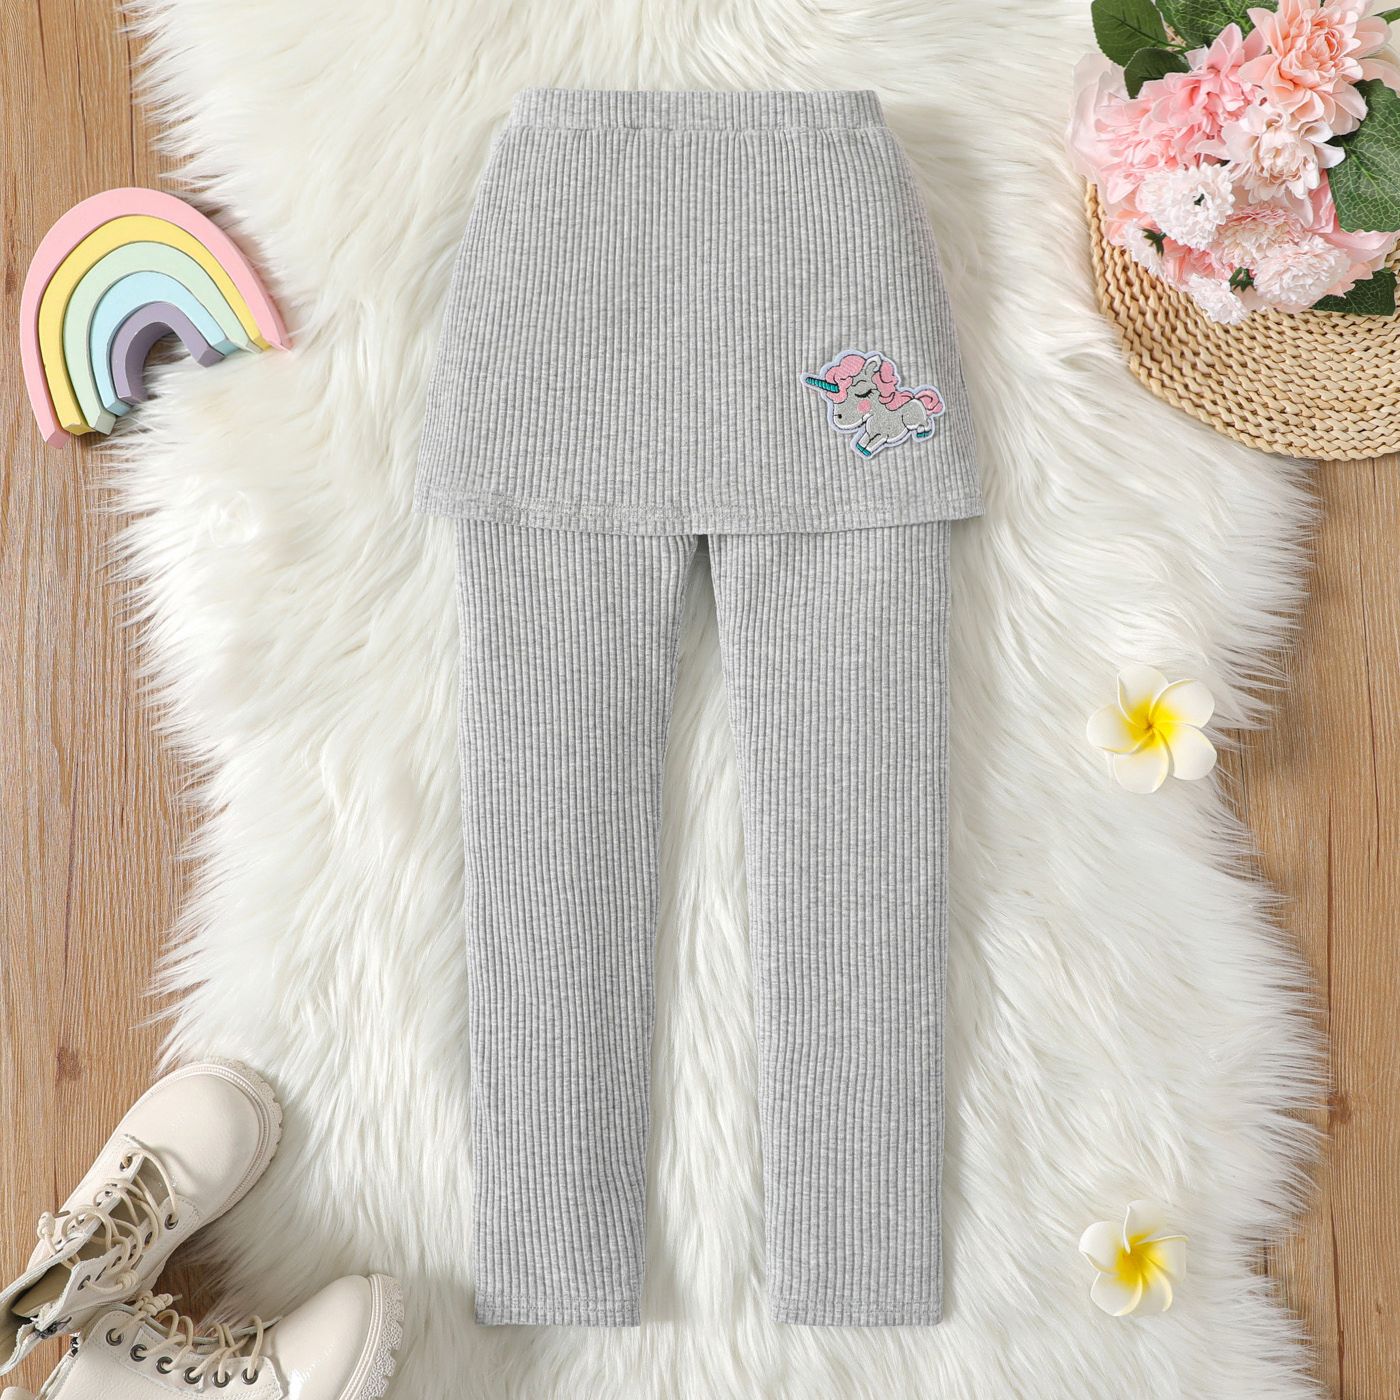 Kid Girl Unicorn Embroidered Ribbed Cotton Skirt Leggings